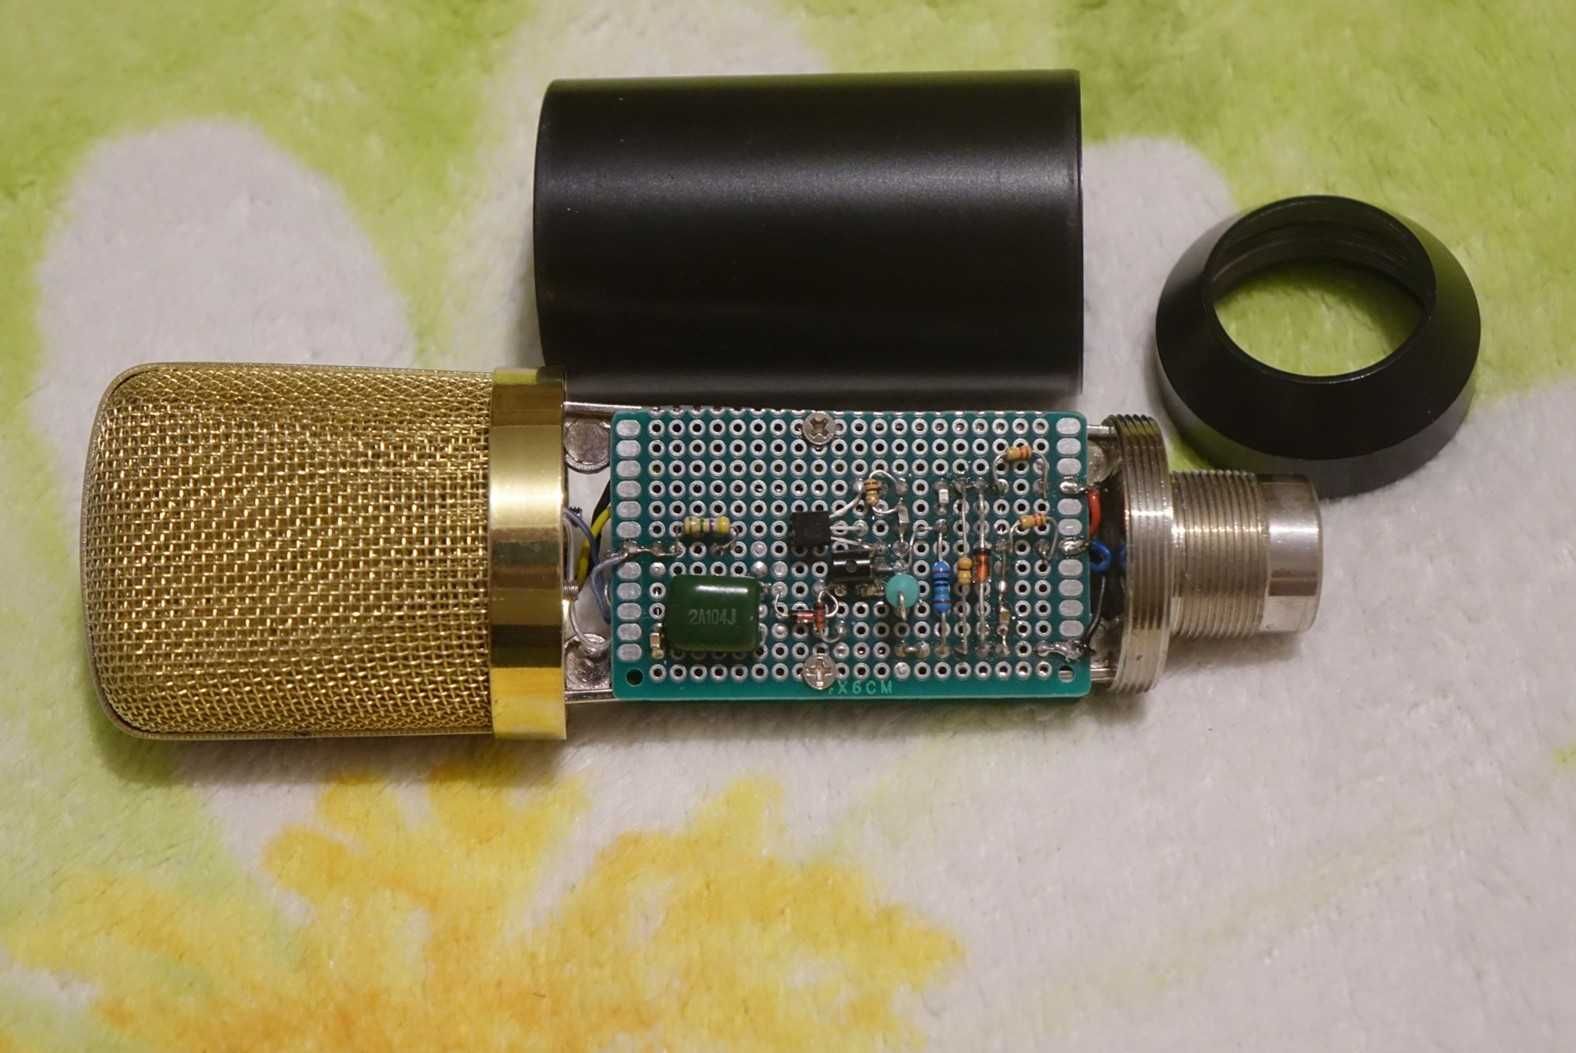 Конденсаторный DIY микрофон LCD 34mm  PAD -12dB Low CUT Filter 120 Hz